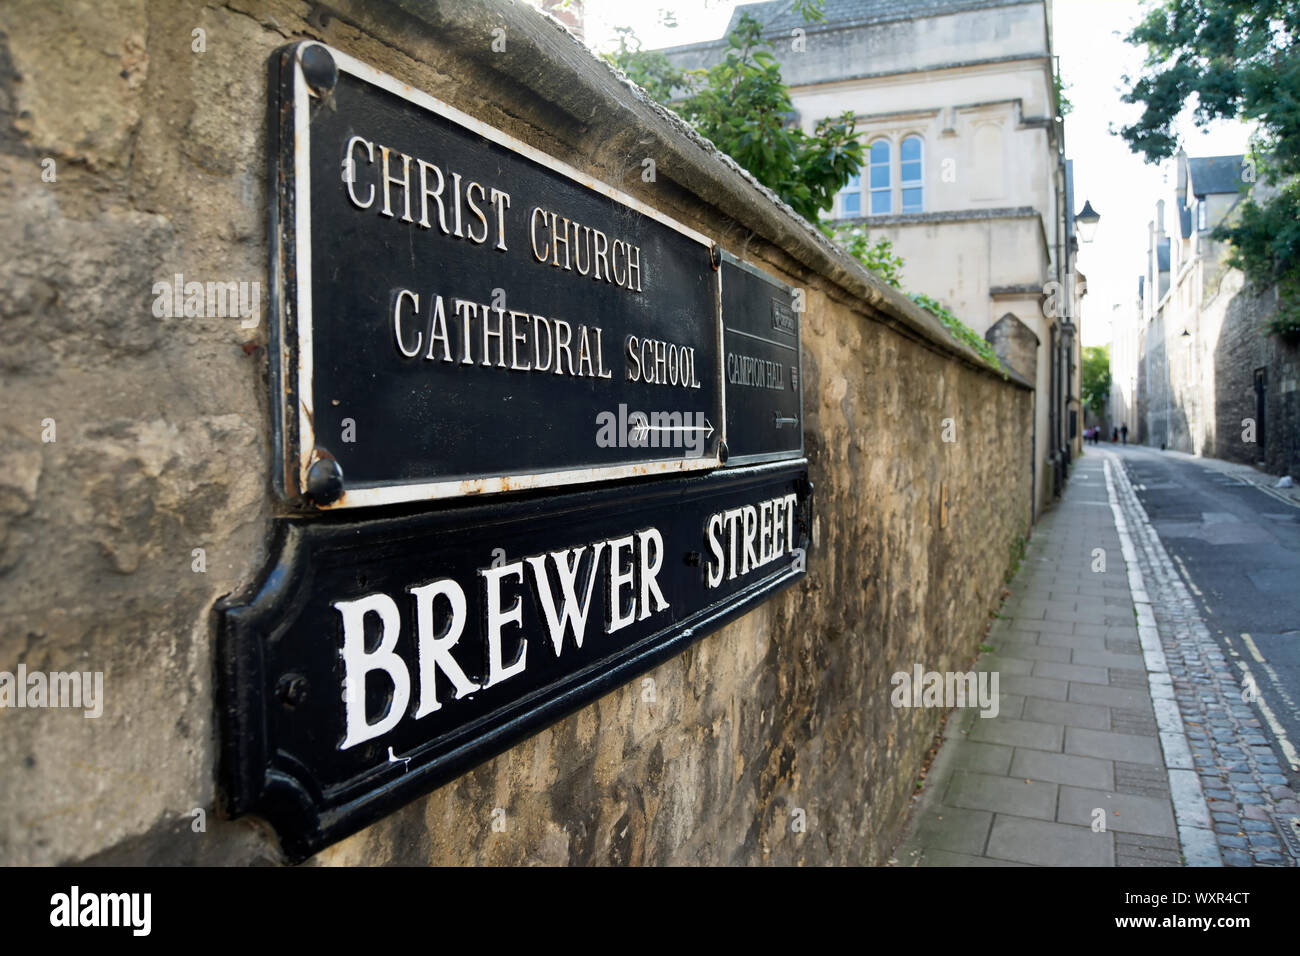 Il nome della strada segno per Brewer street, oxford, inghilterra, sotto la direzione di un segno per la Chiesa di Cristo Scuola cattedrale Foto Stock